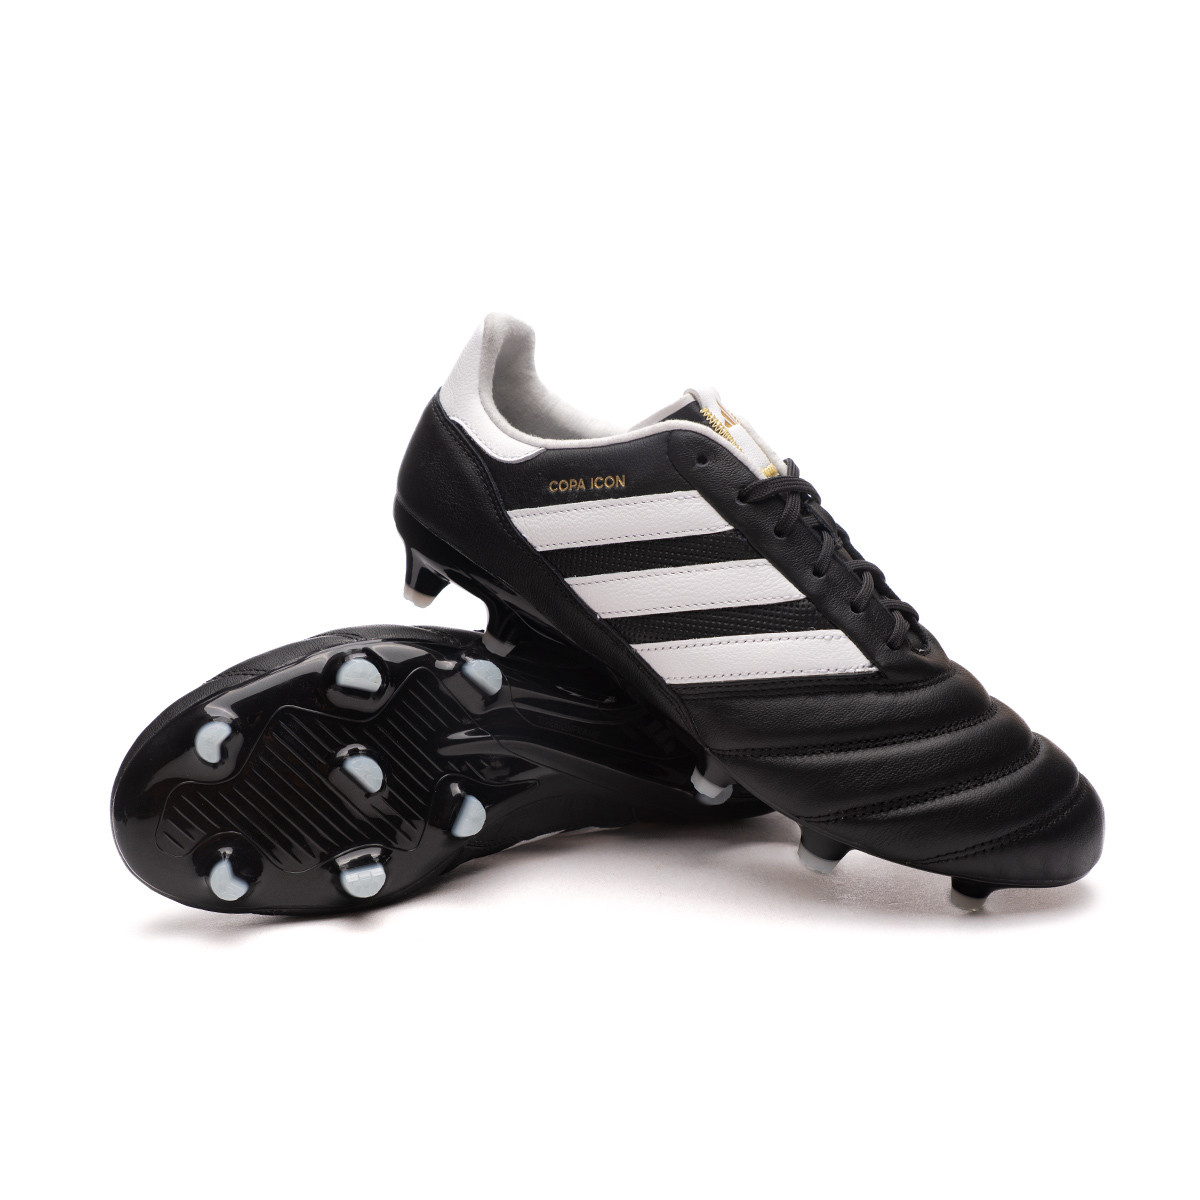 El cuarto capturar conjunto Zapatos de fútbol adidas Copa Icon FG Core Black-White-Gold Metallic -  Fútbol Emotion